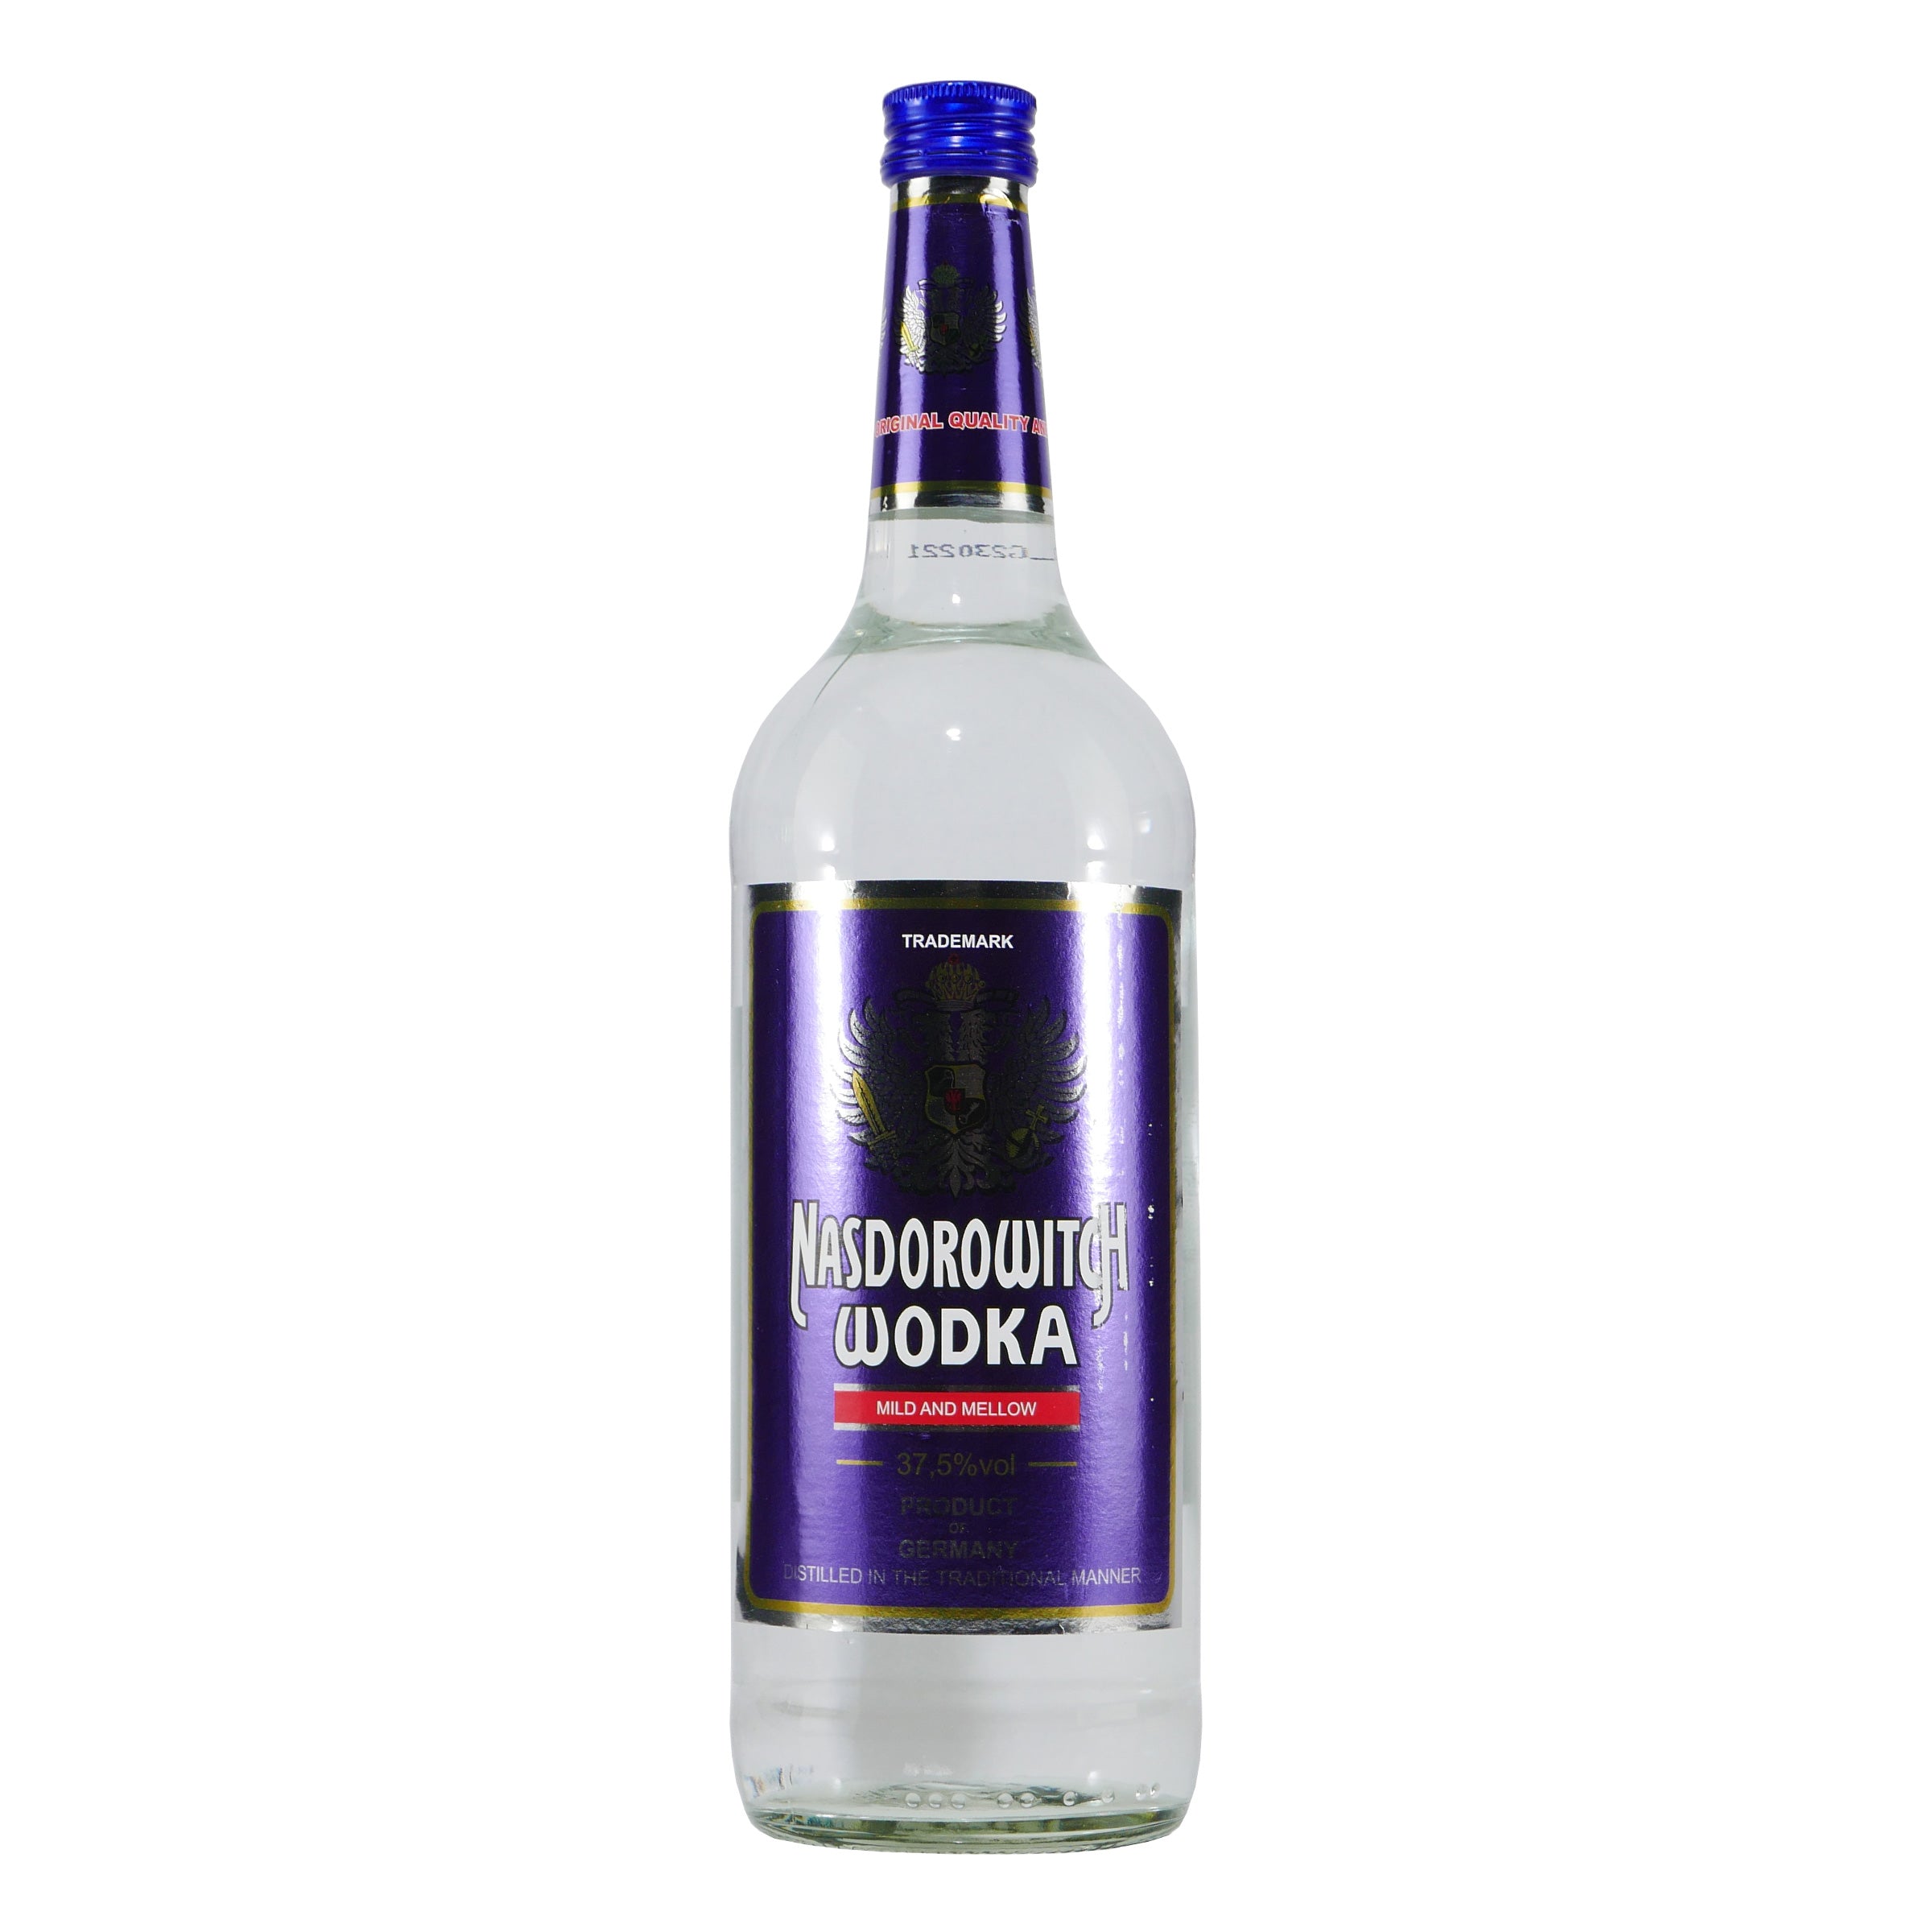 Nasdorowitch Wodka